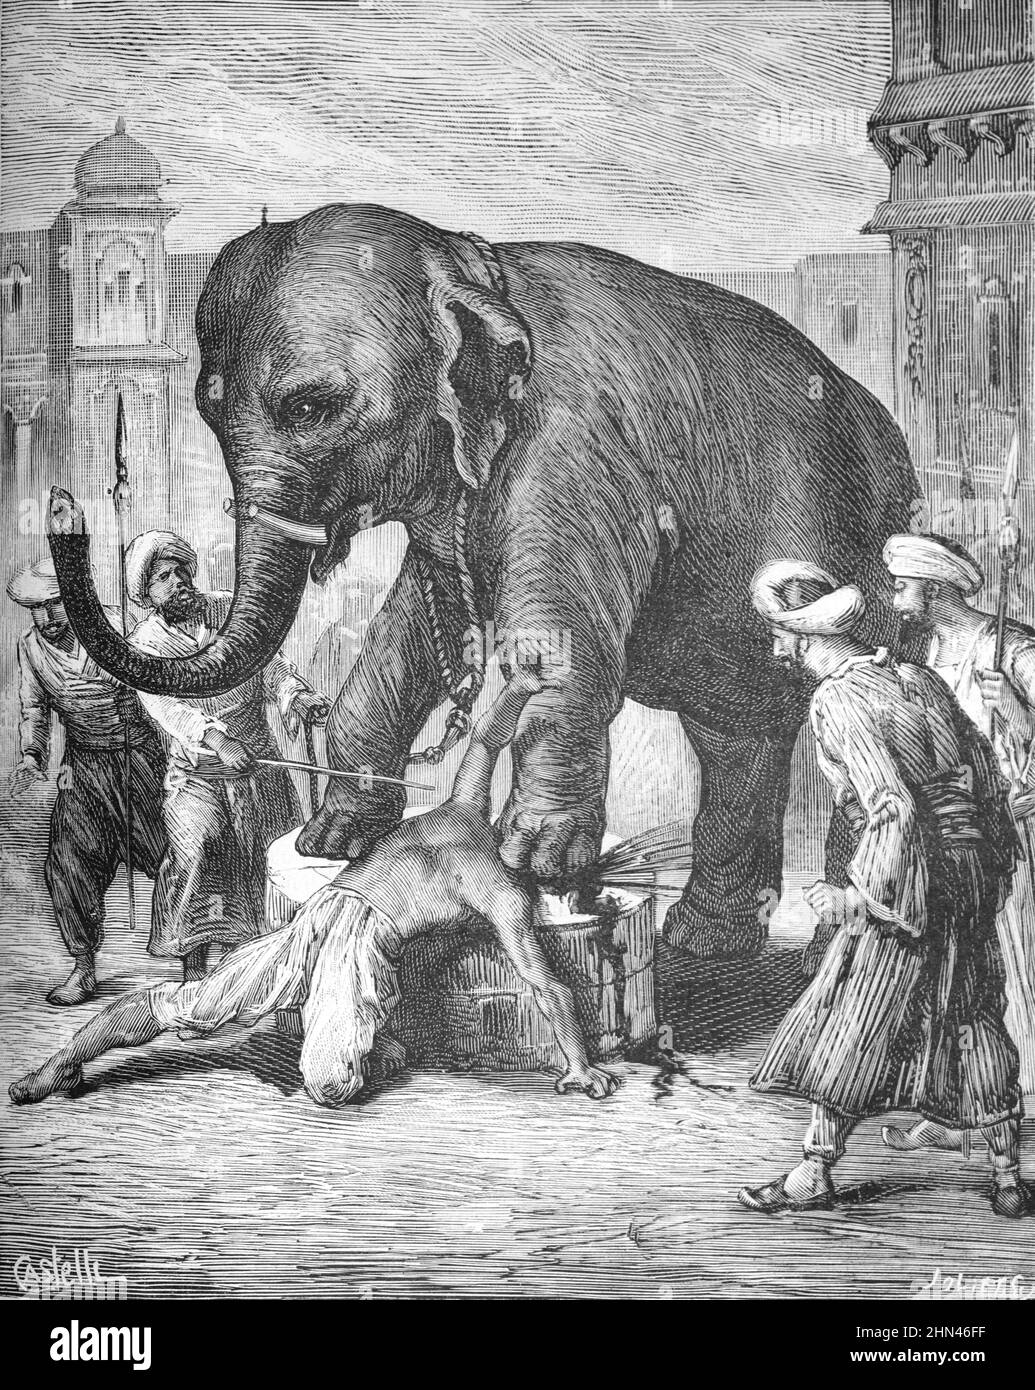 Châtiment ou exécution de traître, mort par écrasement ou écrasé par l'éléphant en cour des Nawabs d'Awadh Lucknow Inde. Illustration ancienne ou gravure 1881 (Castelli-Joliet) Banque D'Images